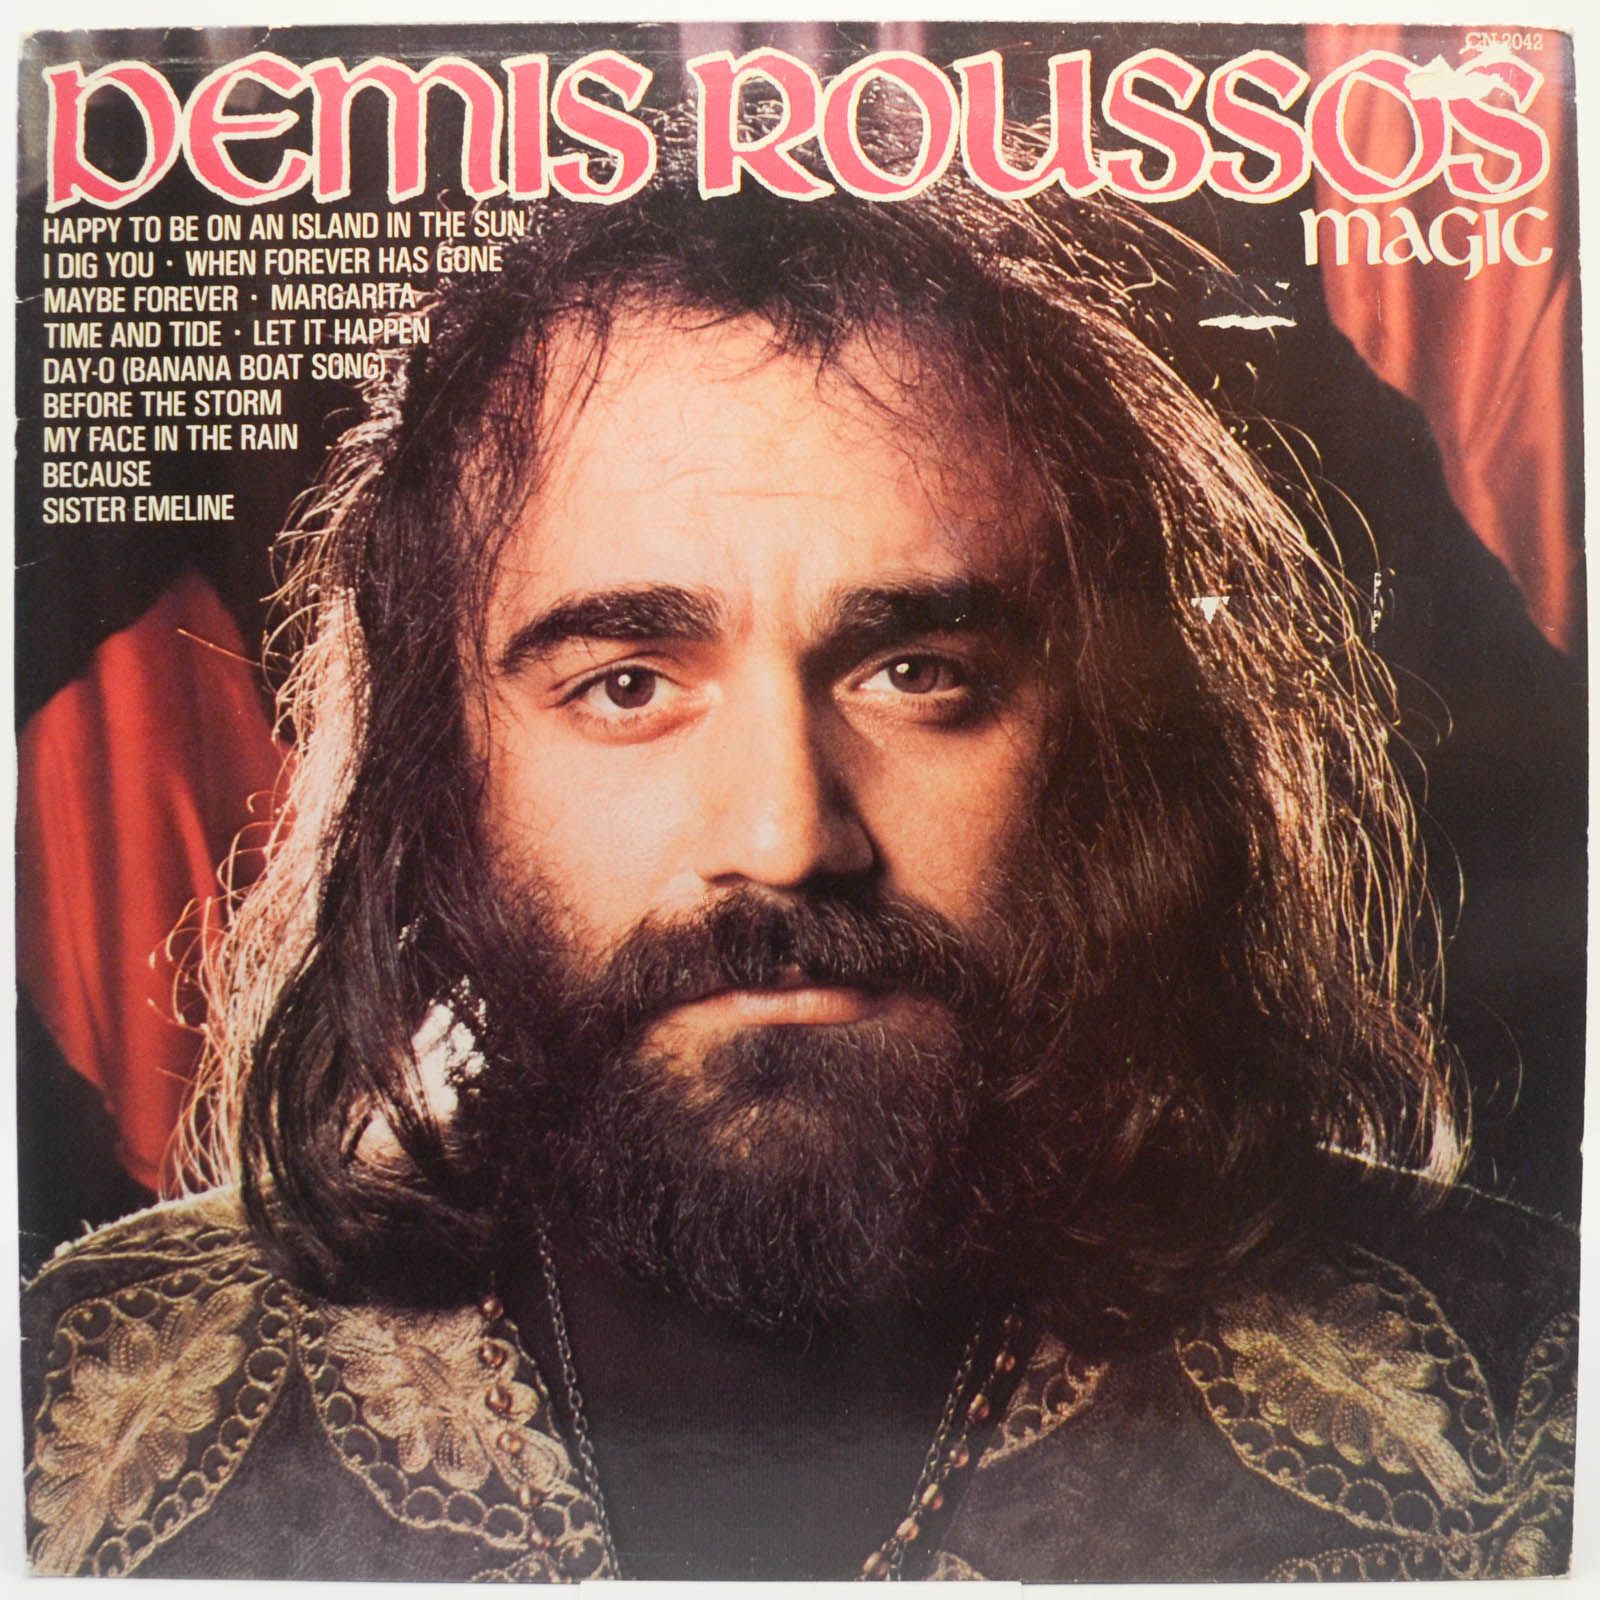 Demis Roussos — Demis Roussos Magic (UK), 1977